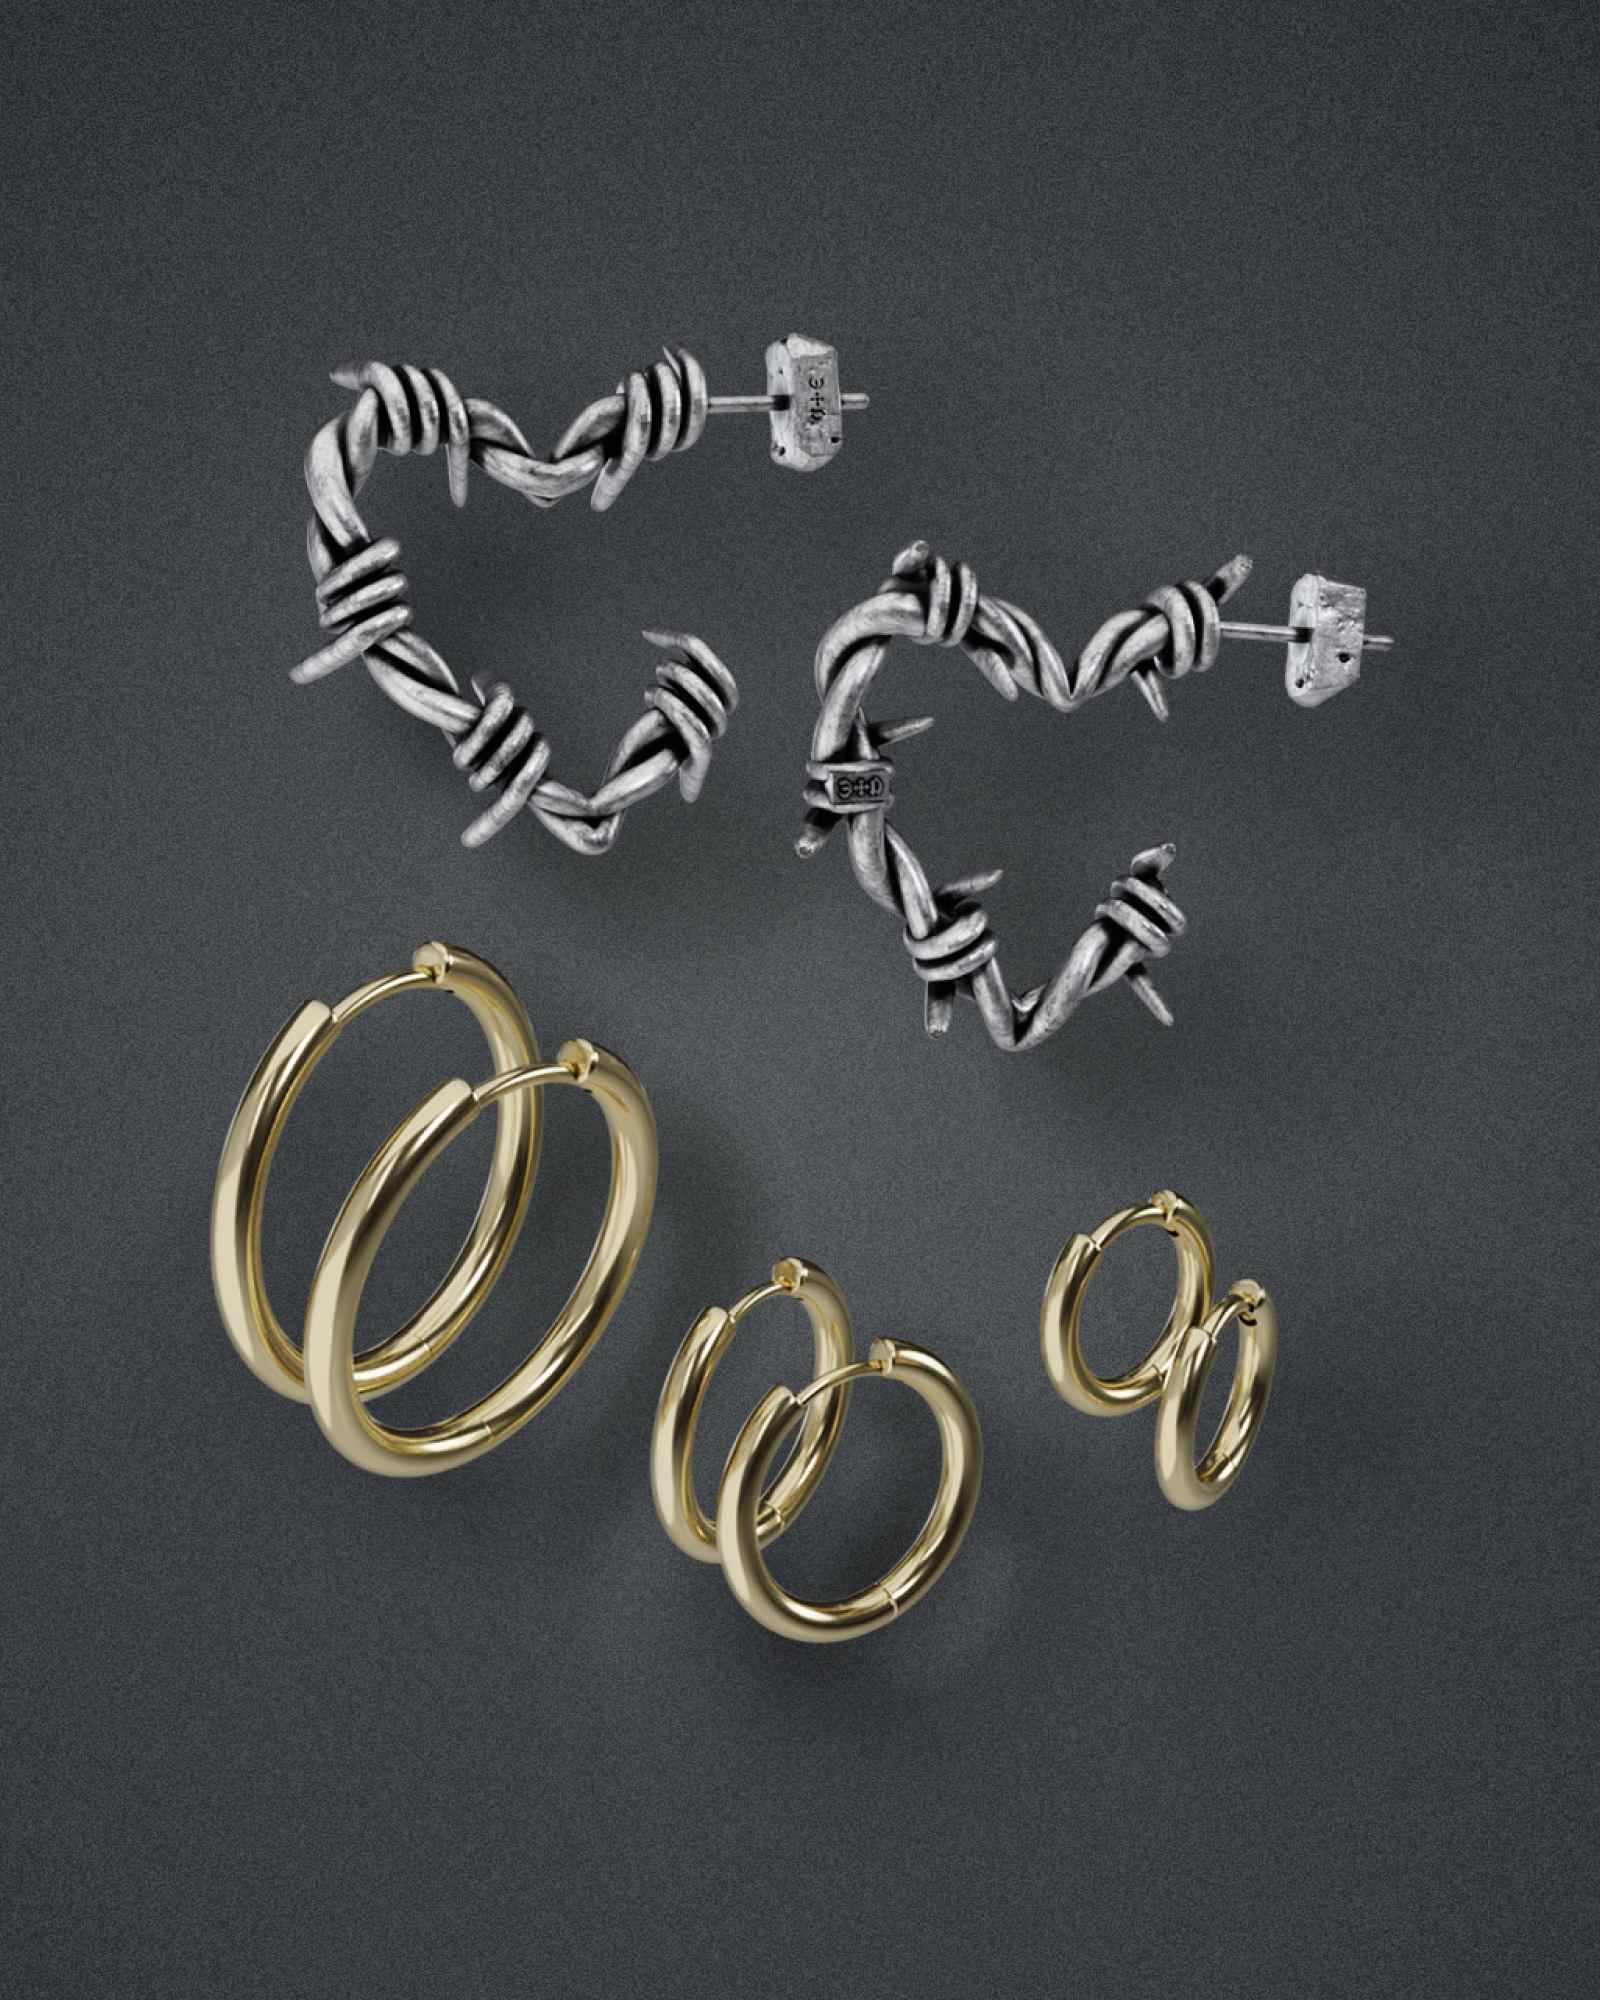 Salem Key Earrings in Silver - Huggie Earrings by Ask & Embla